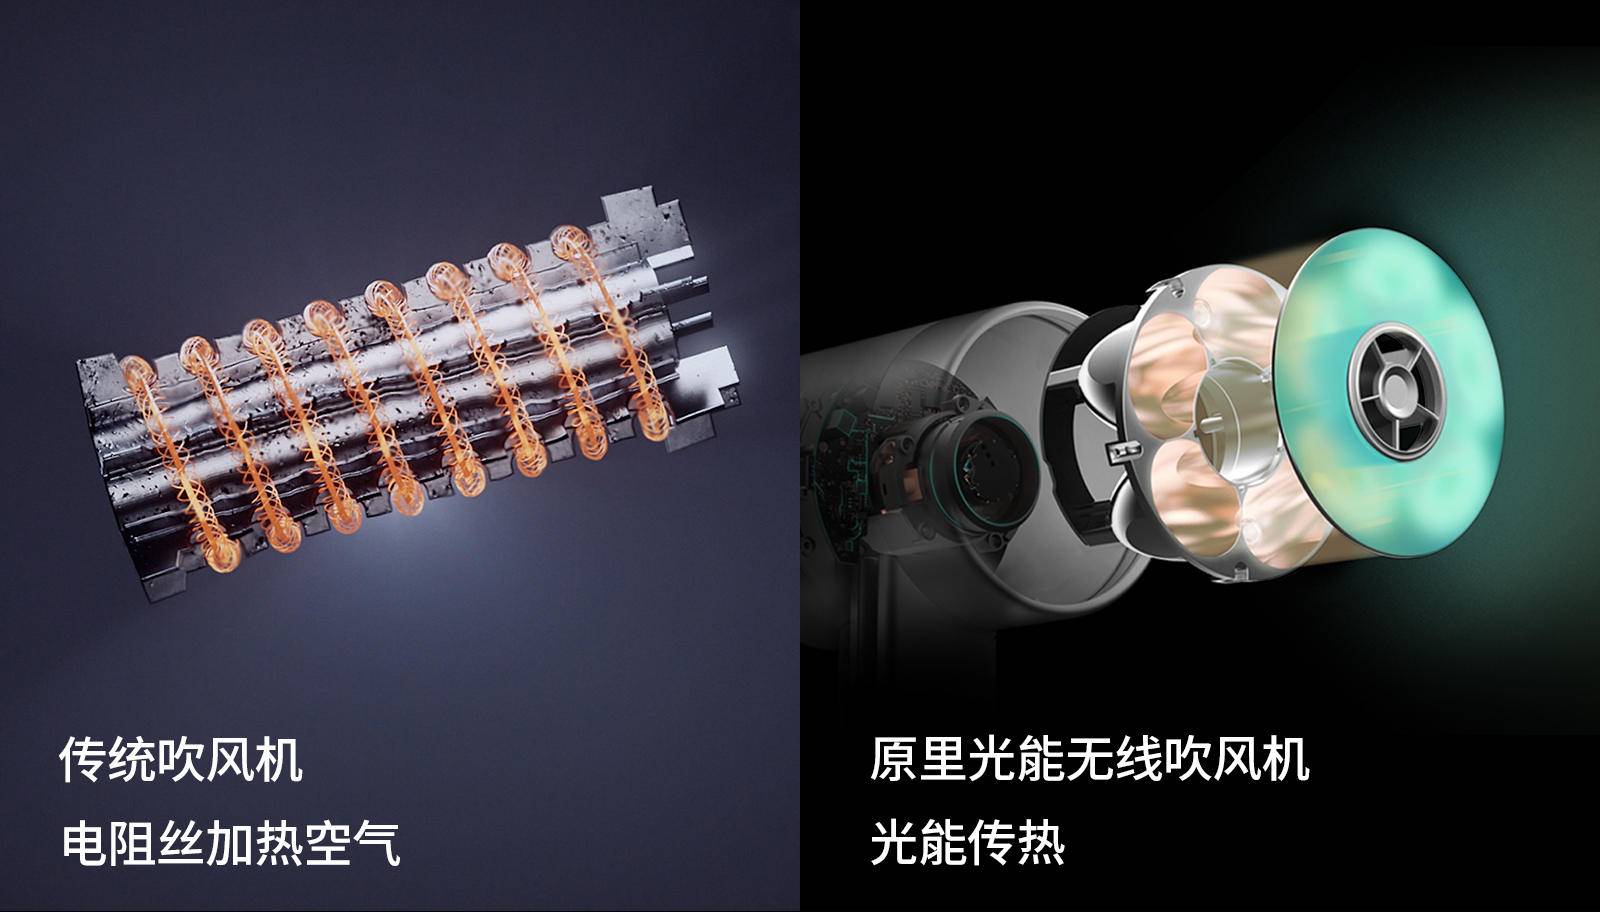 2CcCVqS5zmzWfQfW - Questo nuovo asciugacapelli wireless a energia luminosa dovrebbe apparire in Cyberpunk 2077